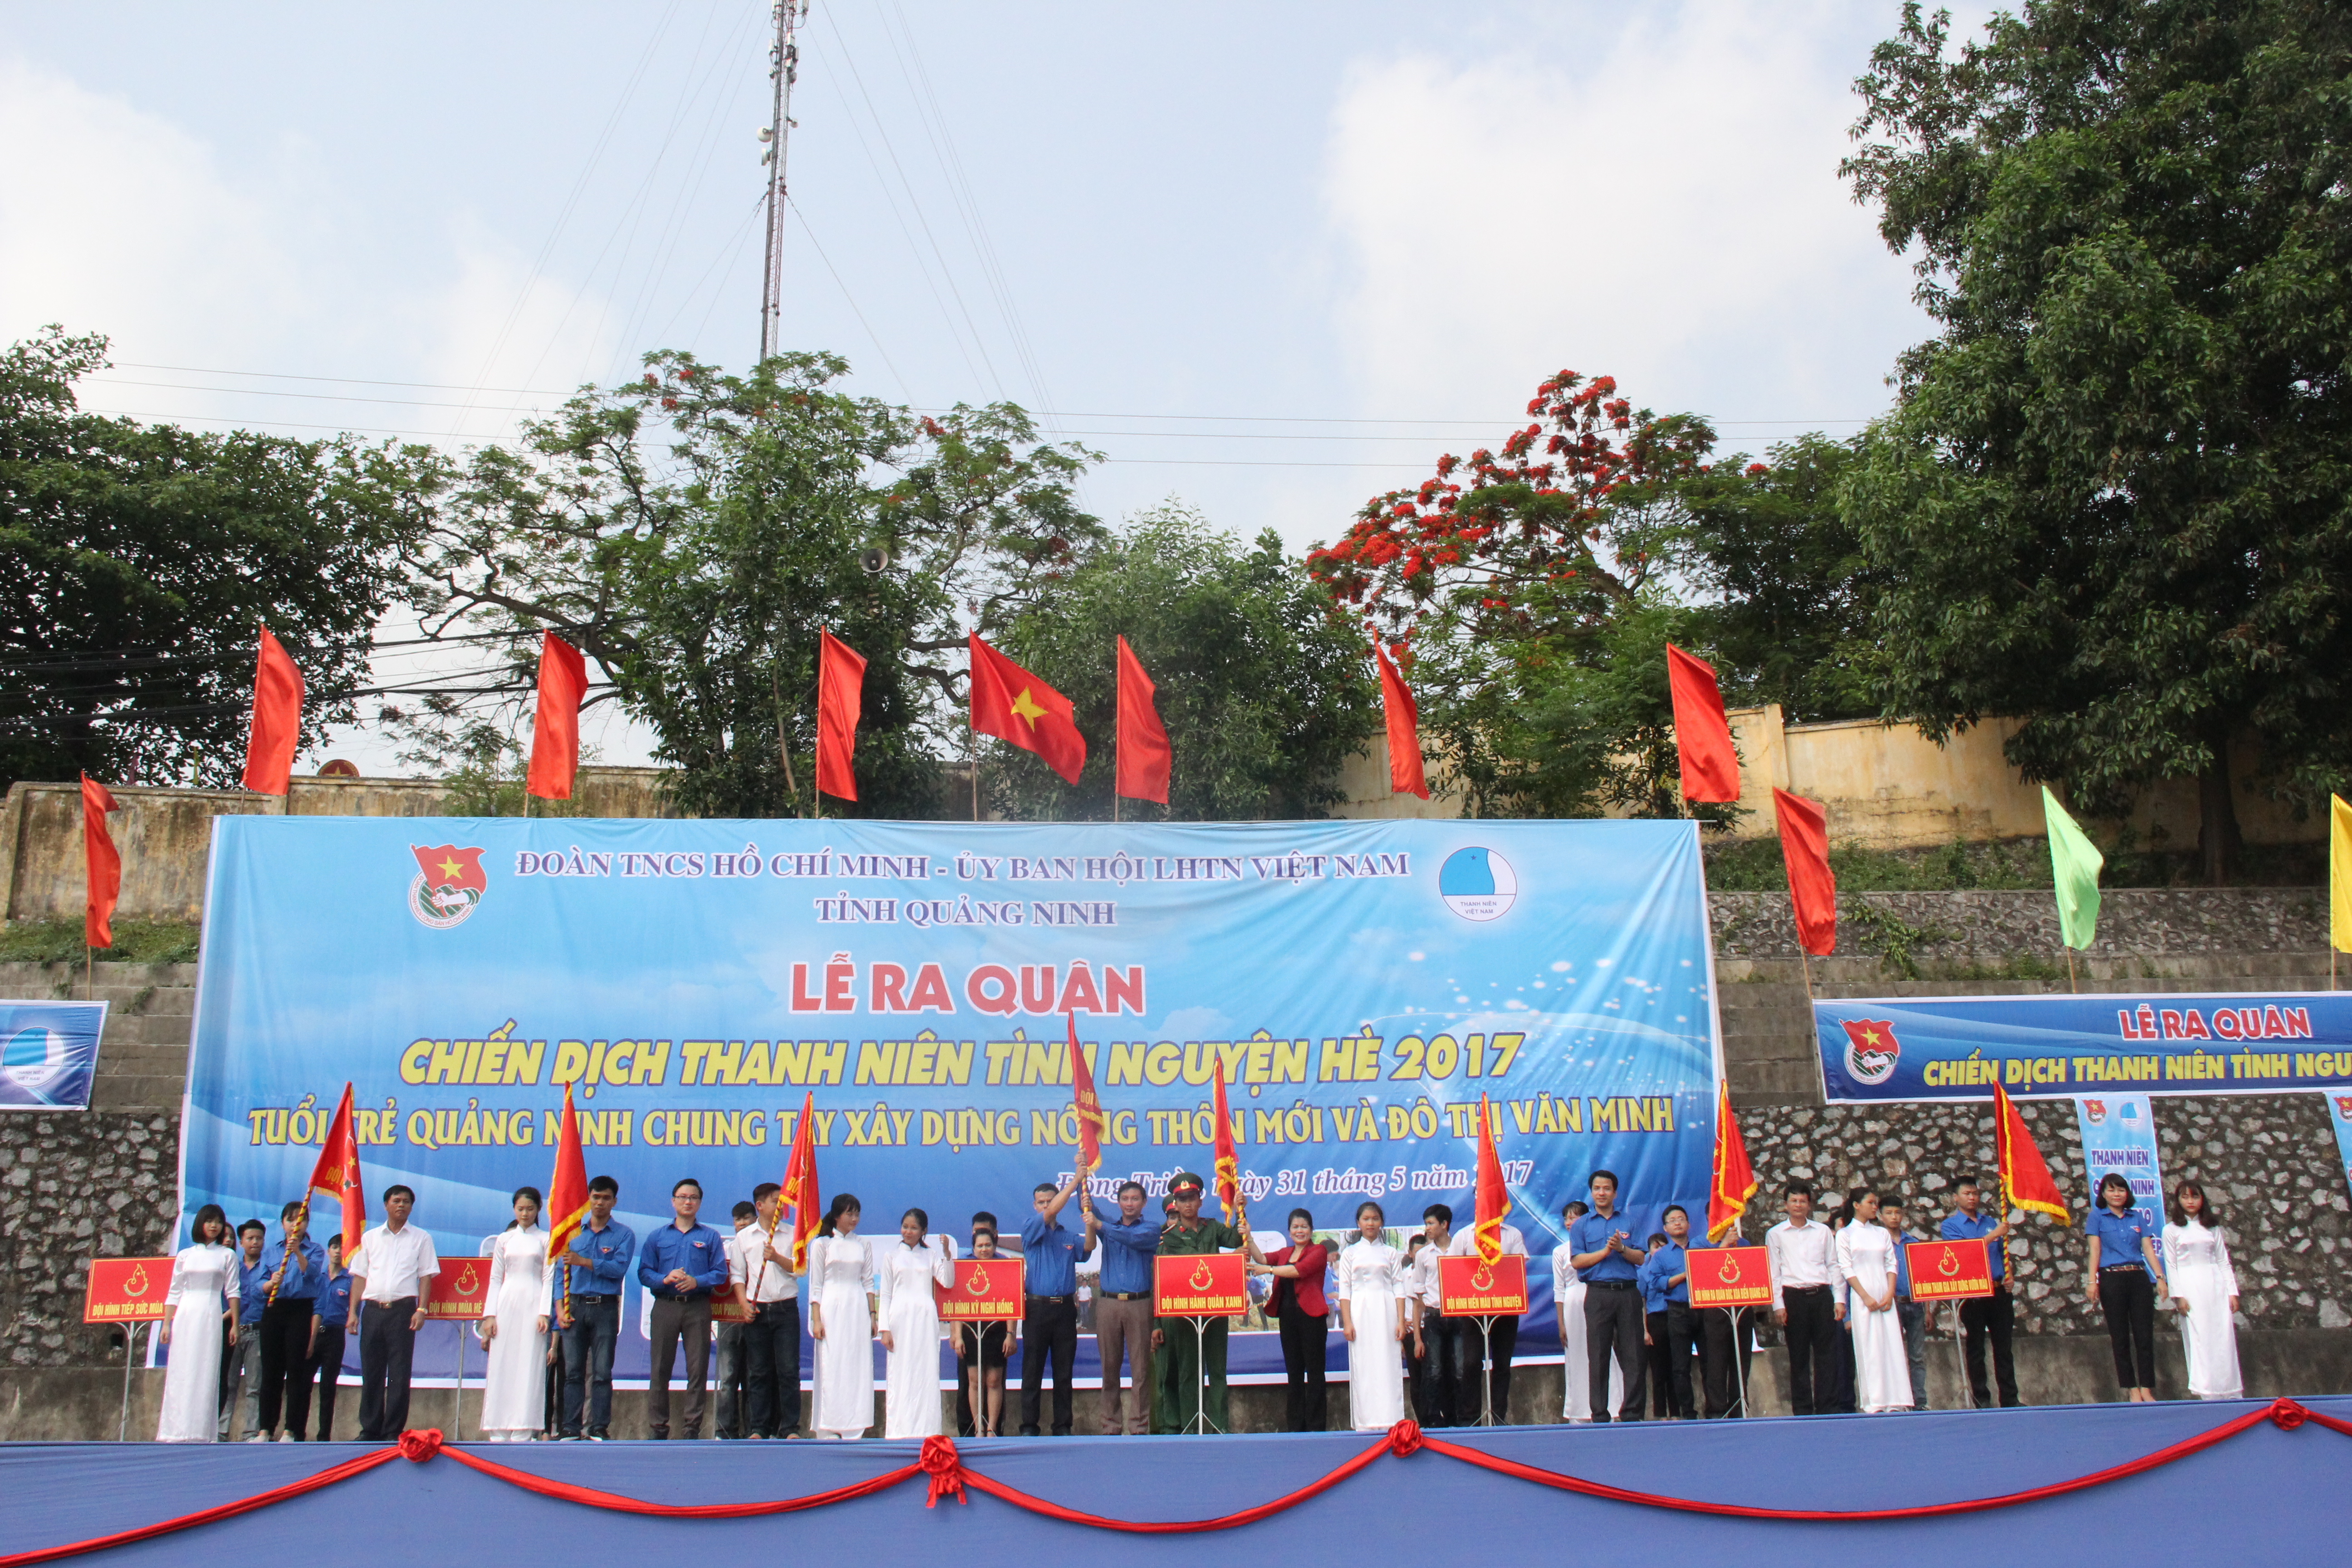 Đồng chí Lê Hùng Sơn, Bí thư Tỉnh đoàn cùng các đồng chí đại biểu trao cờ lênh cho các đội thanh niên tình nguyện tham gia chiến thanh niên tình nguyện hè năm 2017